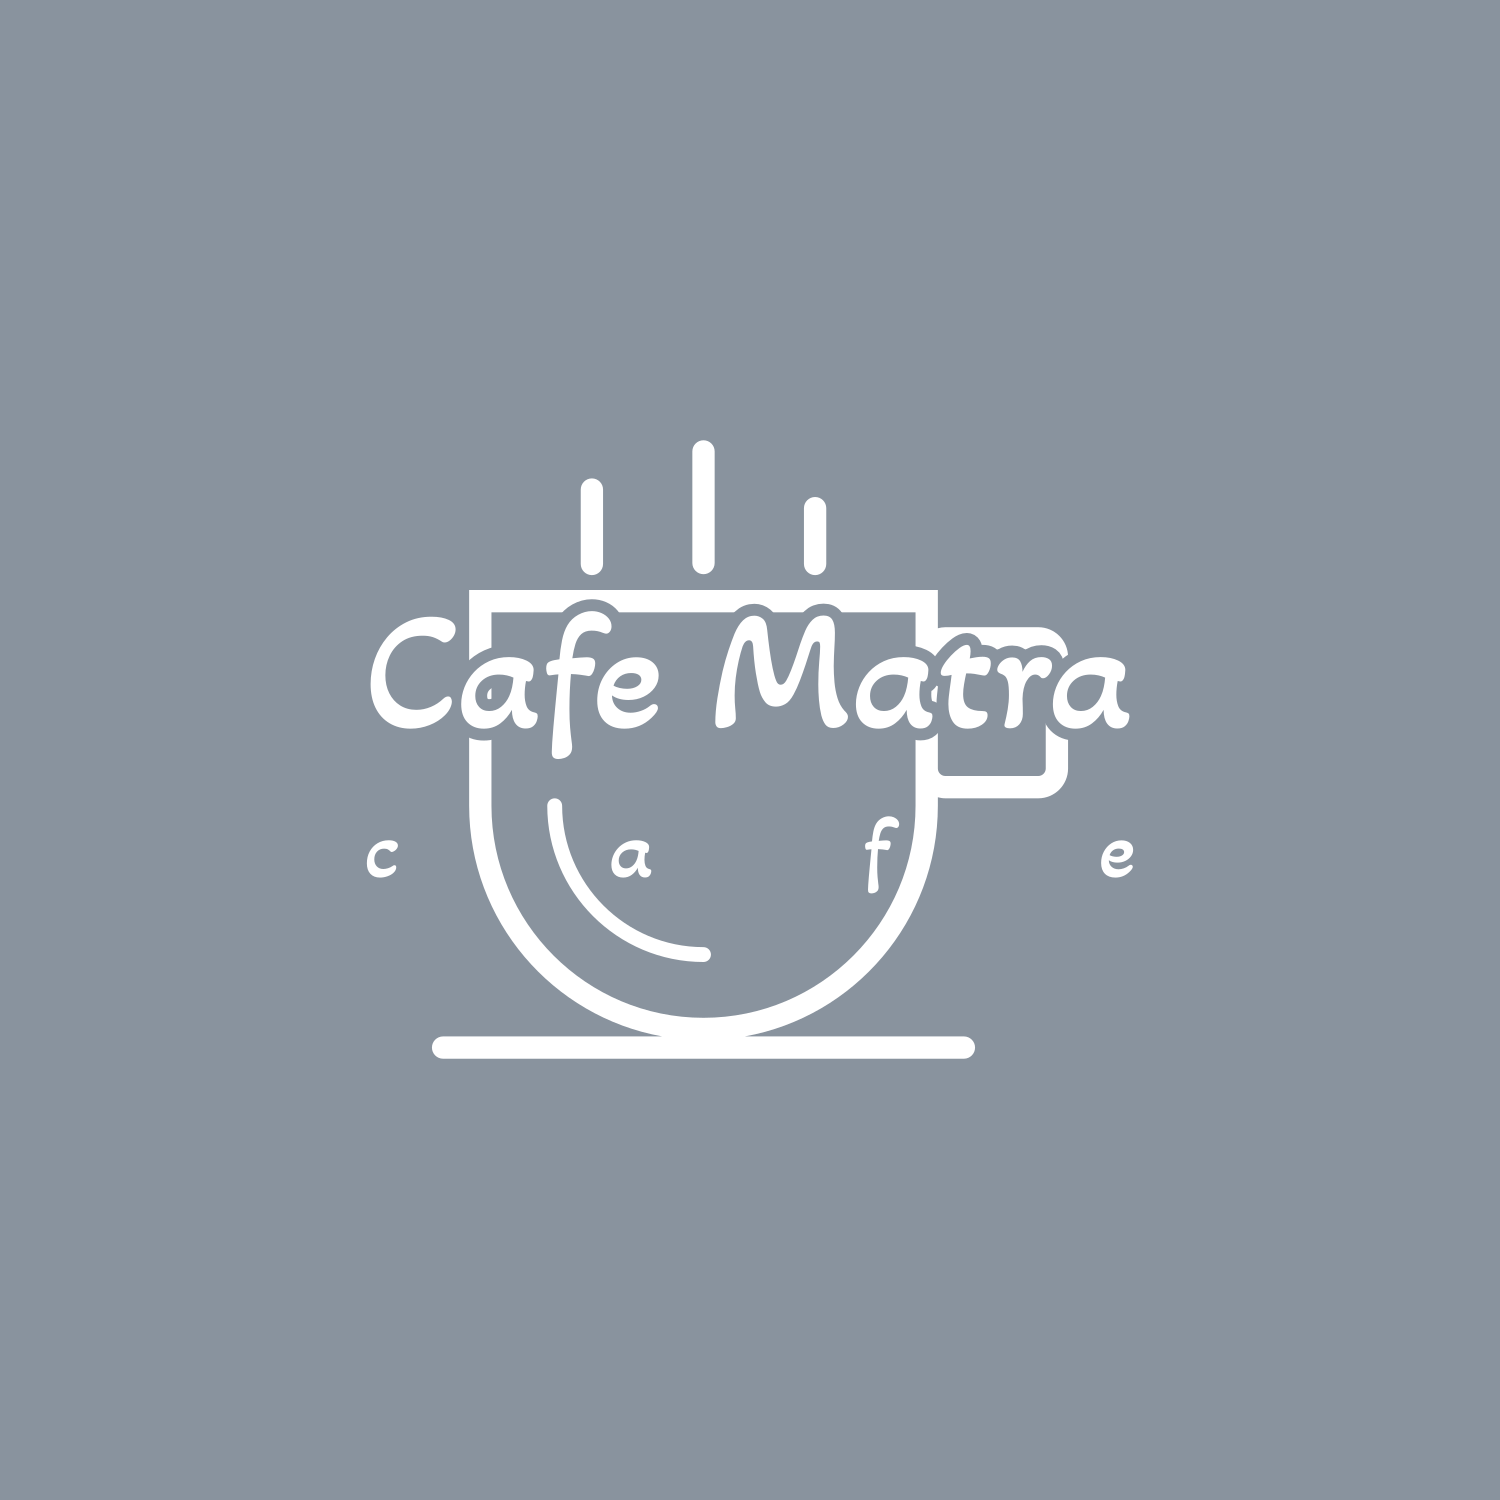 کافه ماترا